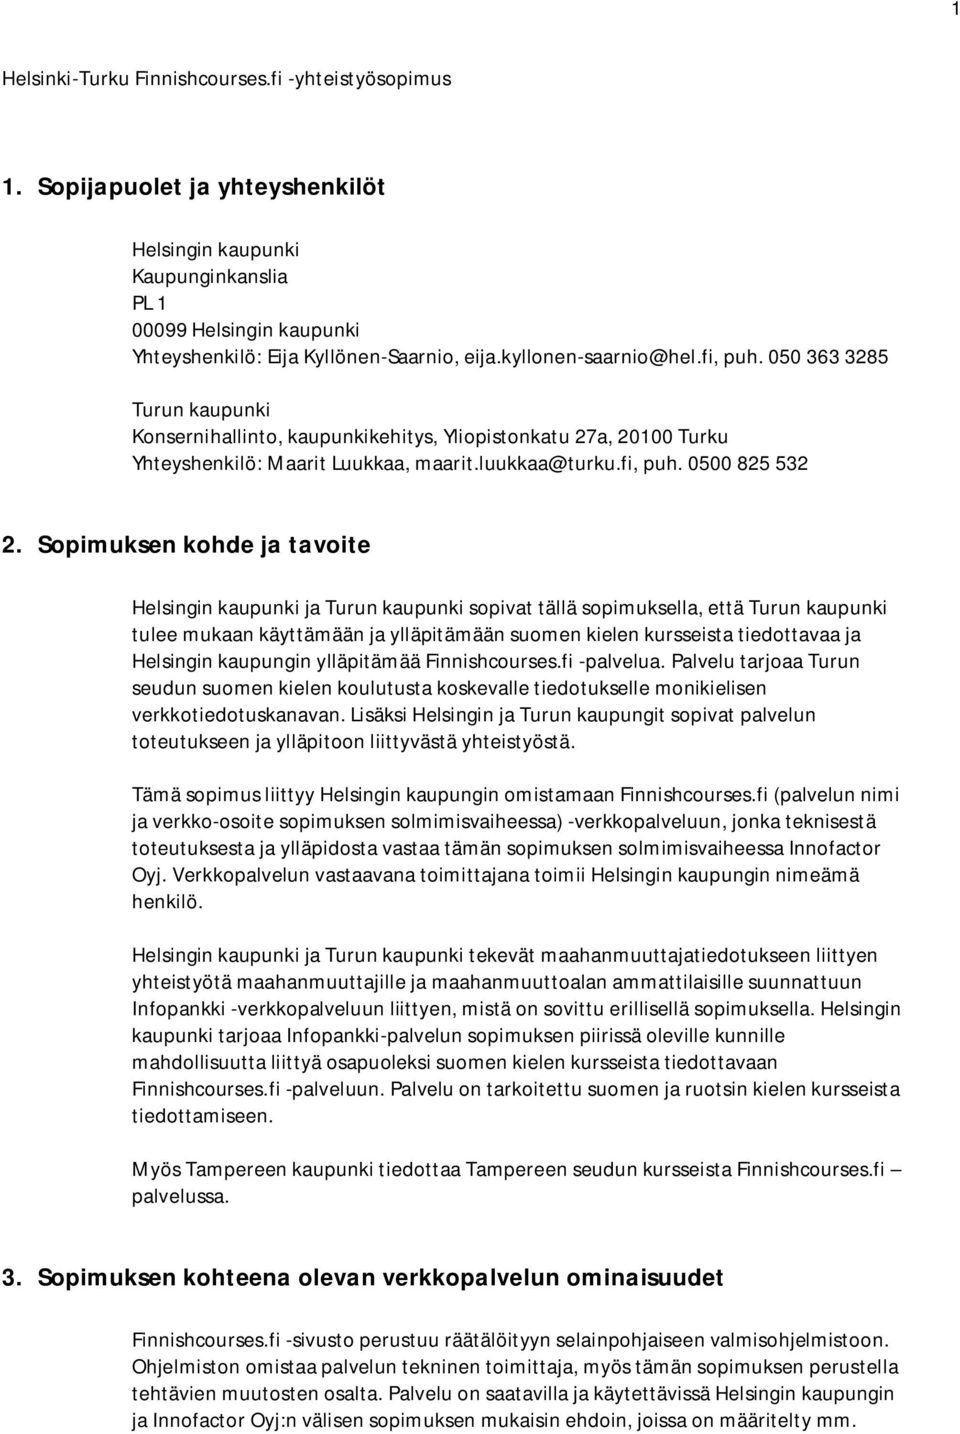 Sopimuksen kohde ja tavoite Helsingin kaupunki ja Turun kaupunki sopivat tällä sopimuksella, että Turun kaupunki tulee mukaan käyttämään ja ylläpitämään suomen kielen kursseista tiedottavaa ja